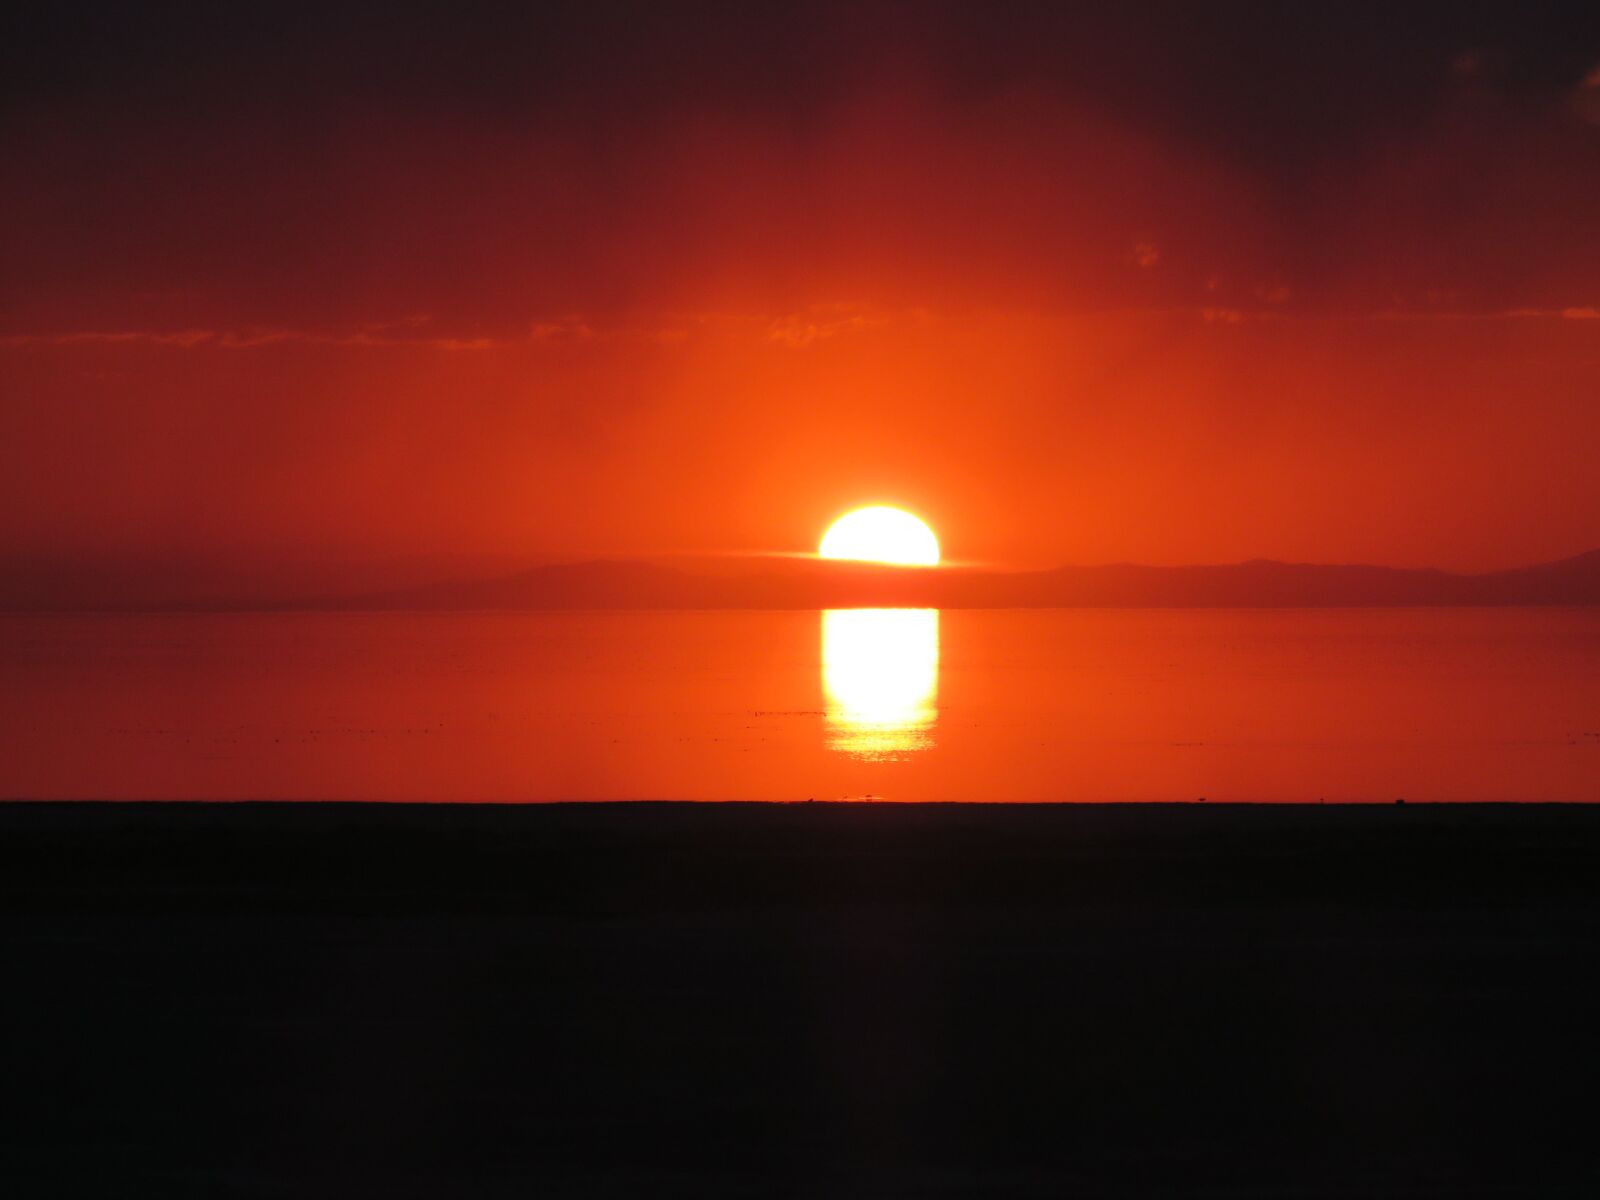 Canon PowerShot SX700 HS sample photo. Sunrise, lake, nature photography